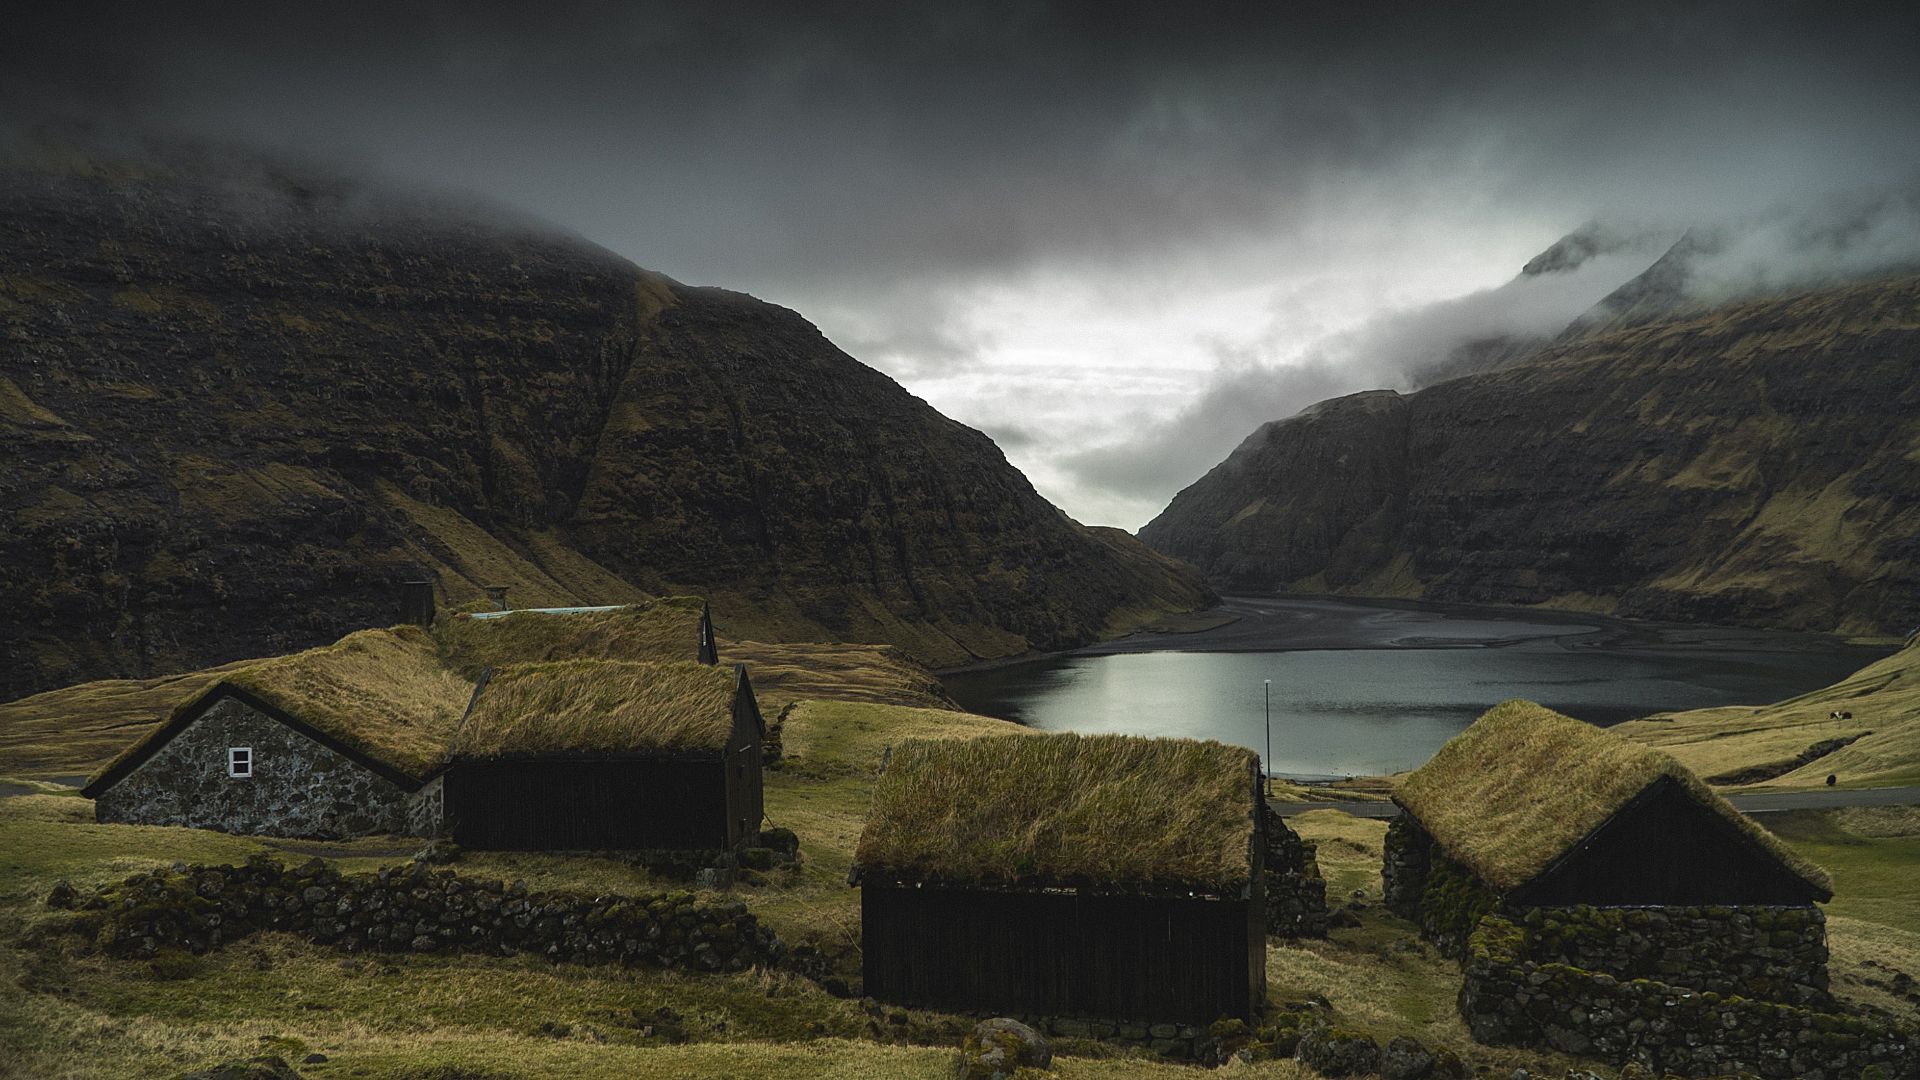 faroe-islands-lake-small-houses-dark-weather-clouds-field-landscape-41091.jpg